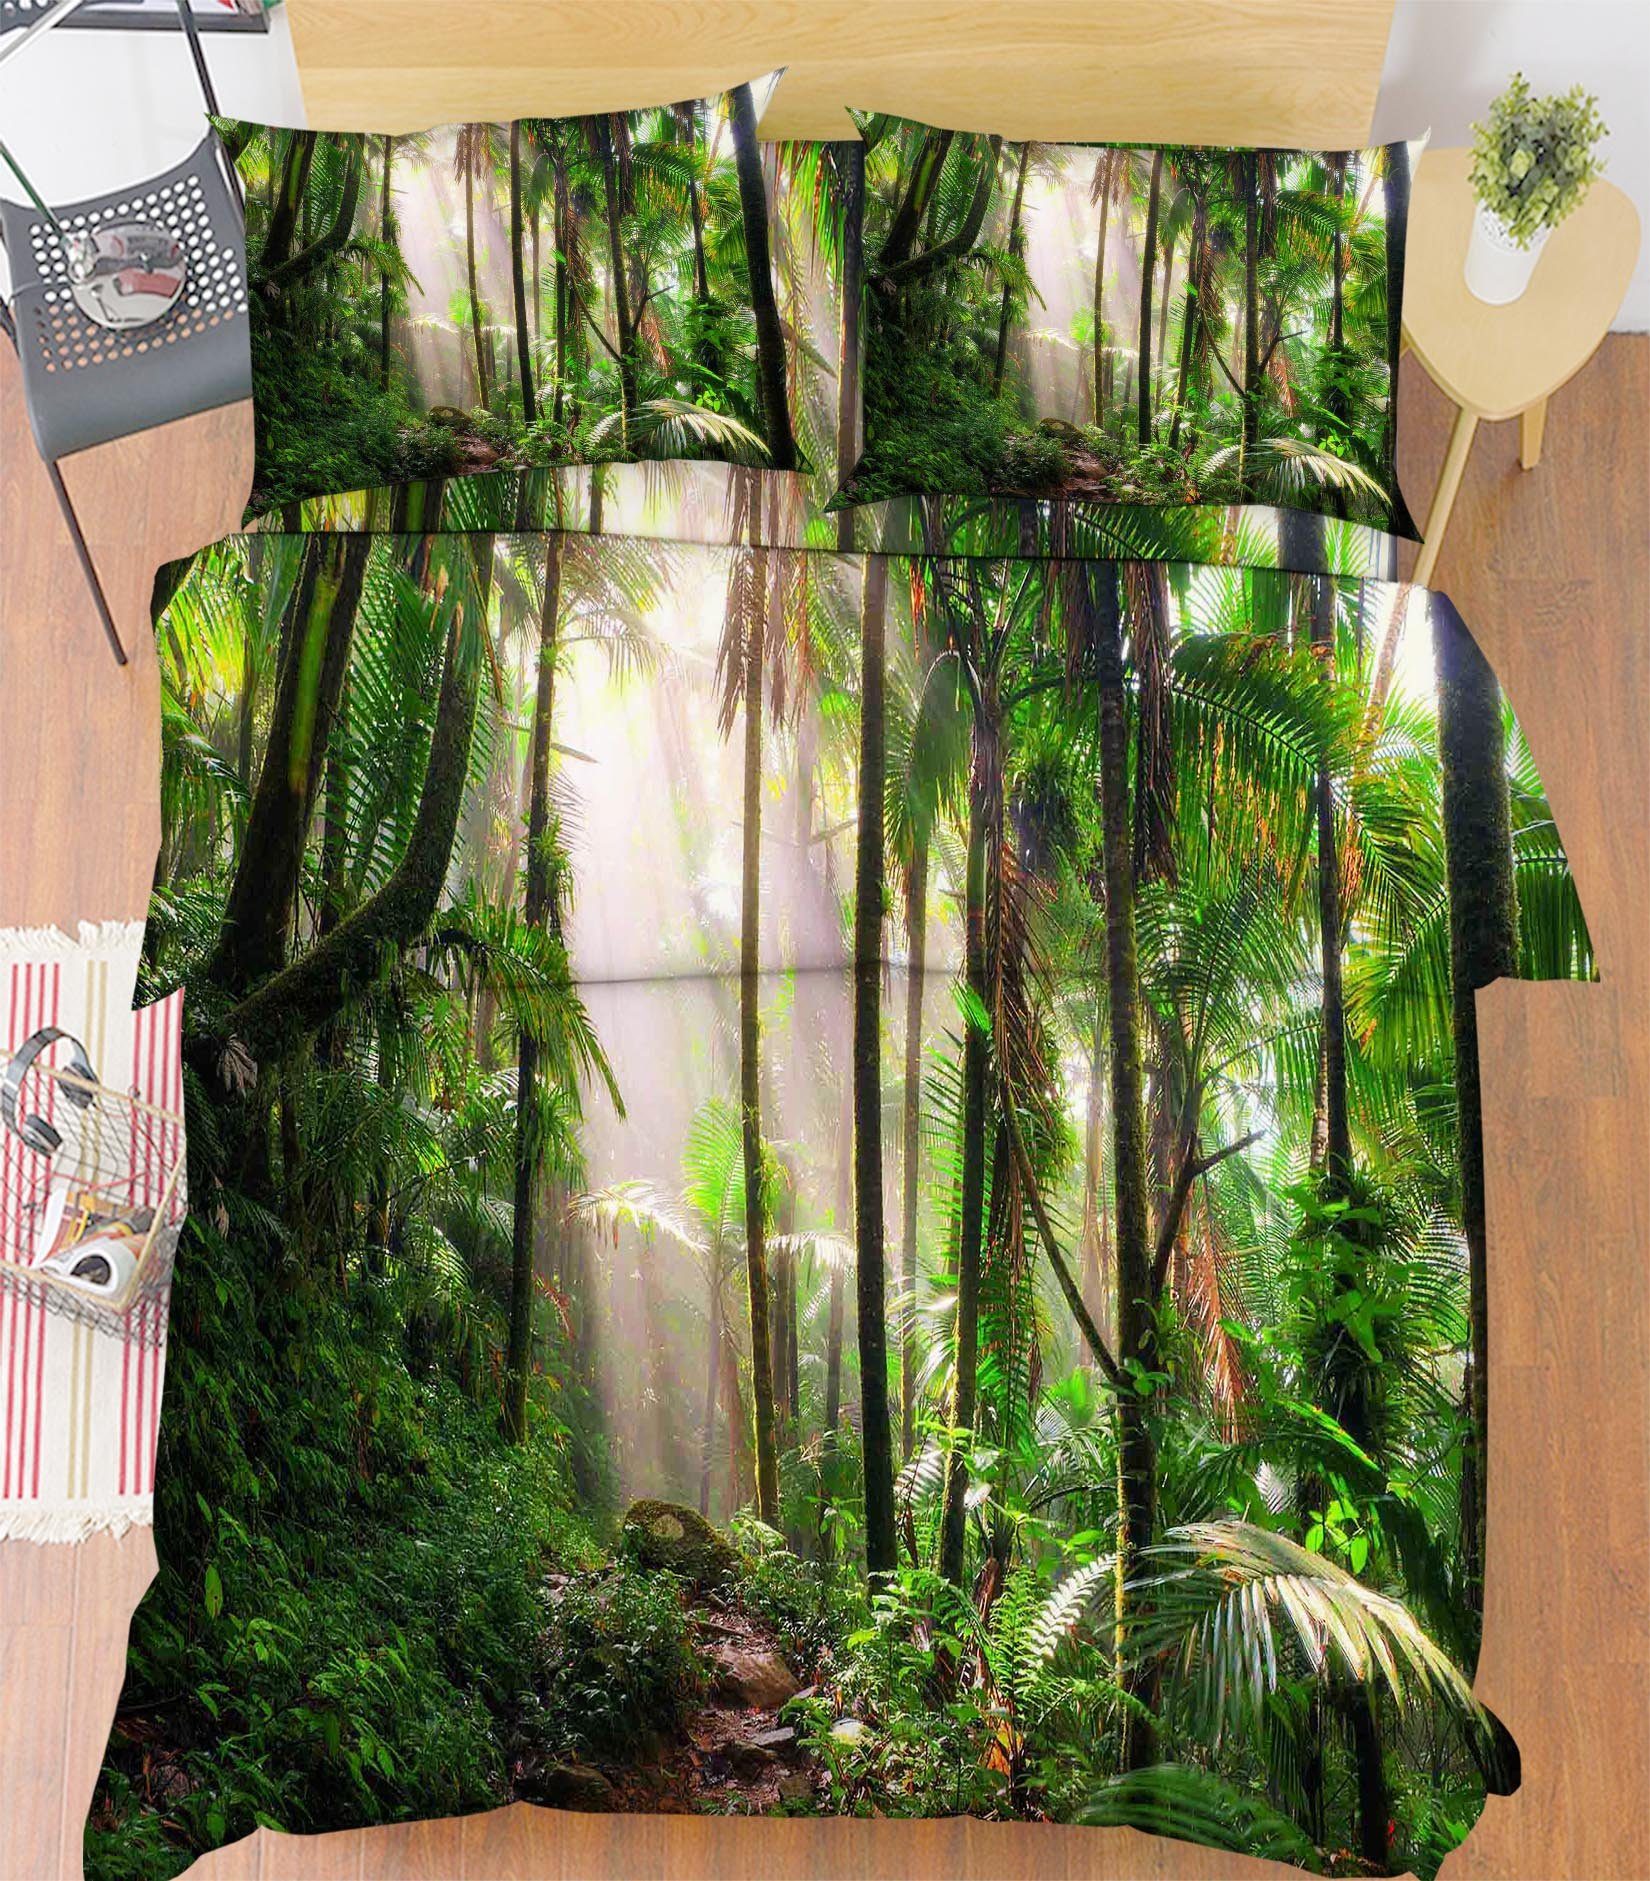 3D Rainforest 26 Bed Pillowcases Quilt Wallpaper AJ Wallpaper 